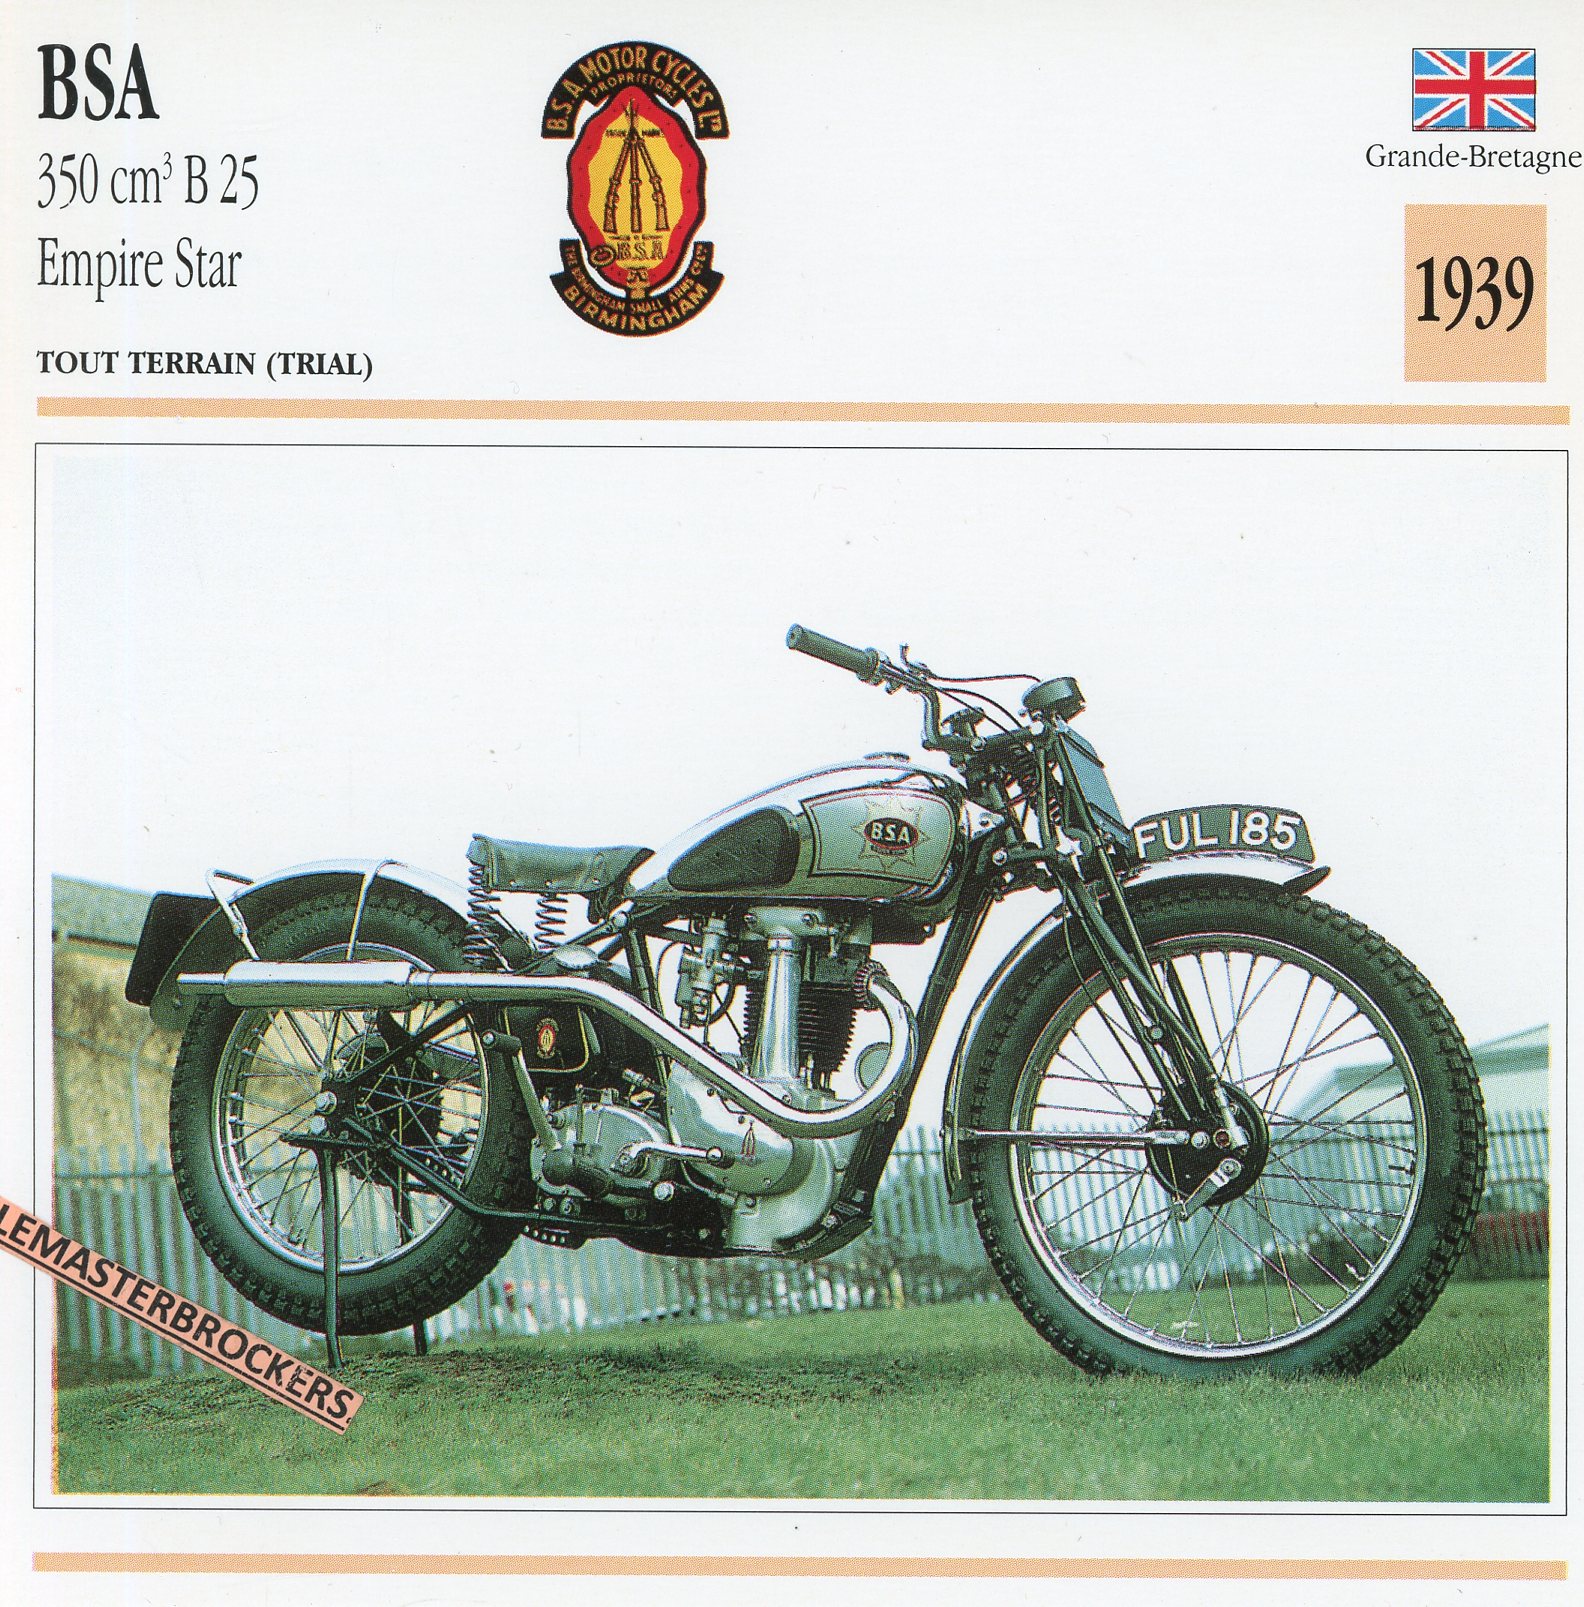 BSA-350-B25-EMPIRE-STAR-1939-FICHE-MOTO-CARDS-ATLAS-LEMASTERBROCKERS